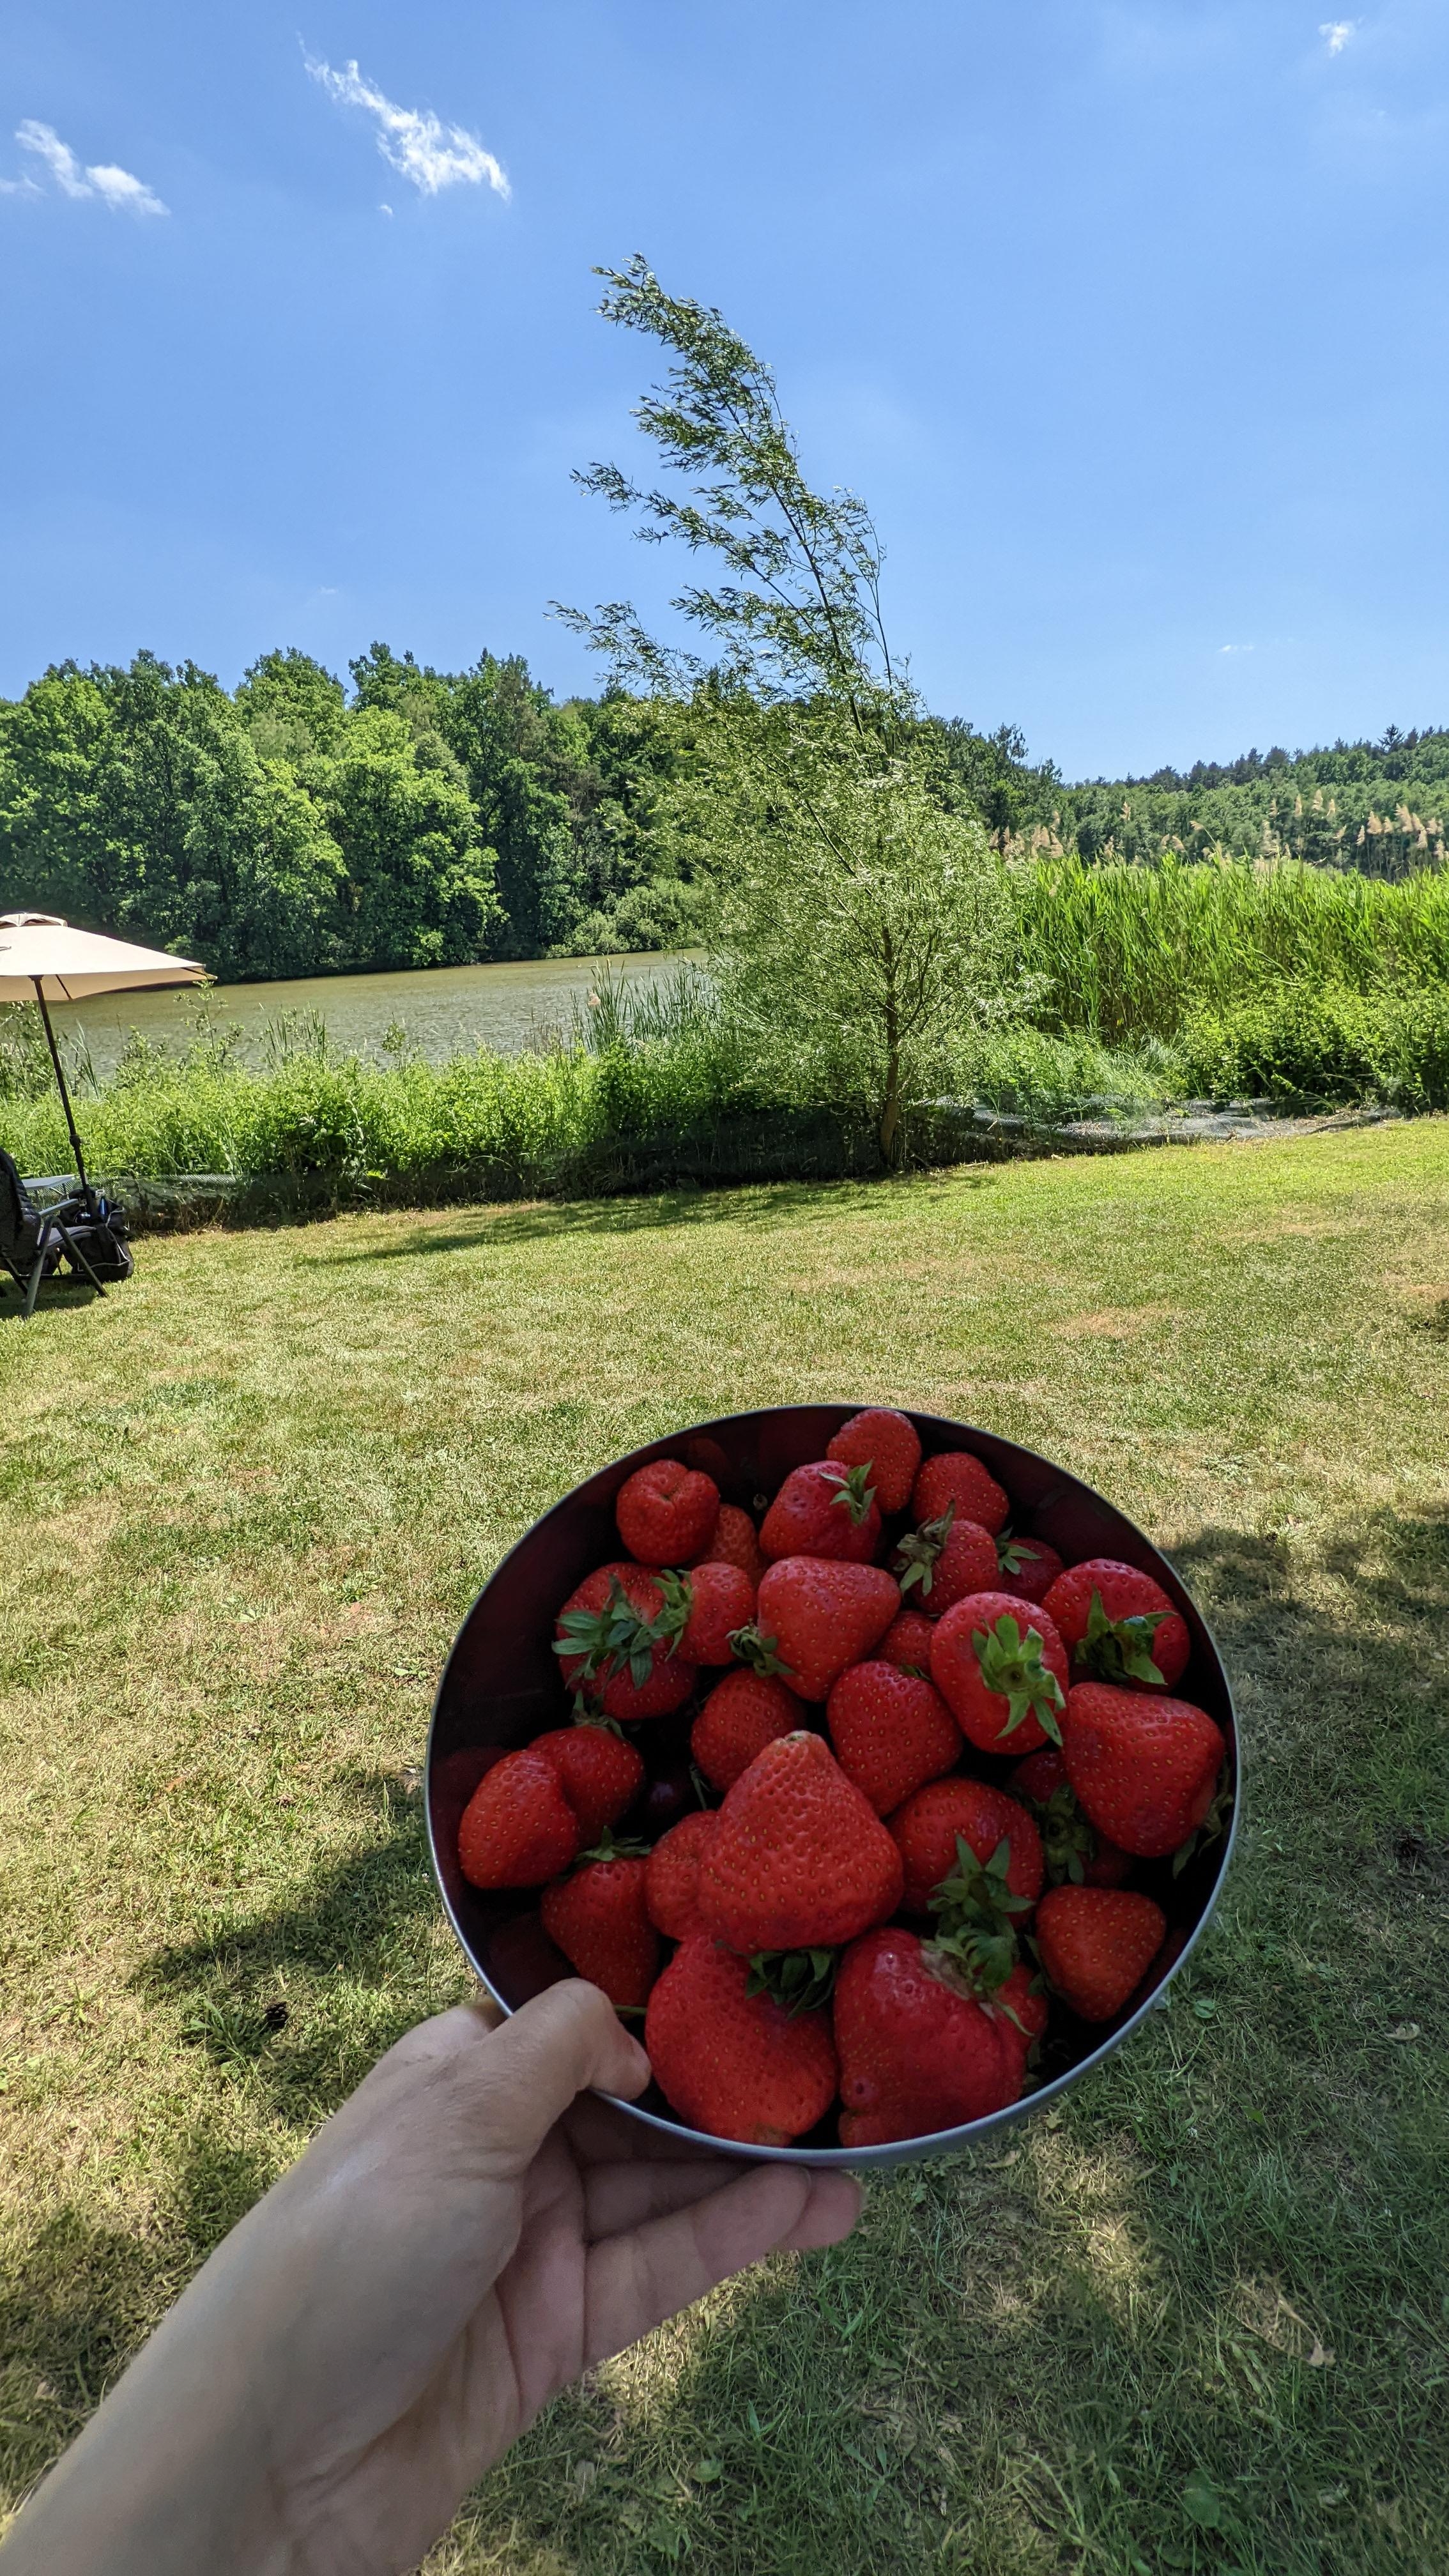 Urlaub mit dem Wohnmobil und draußen Erdbeeren und Kirschen . 🤩
#urlaub #landleben #sommer #picknick #urlaubsfoto